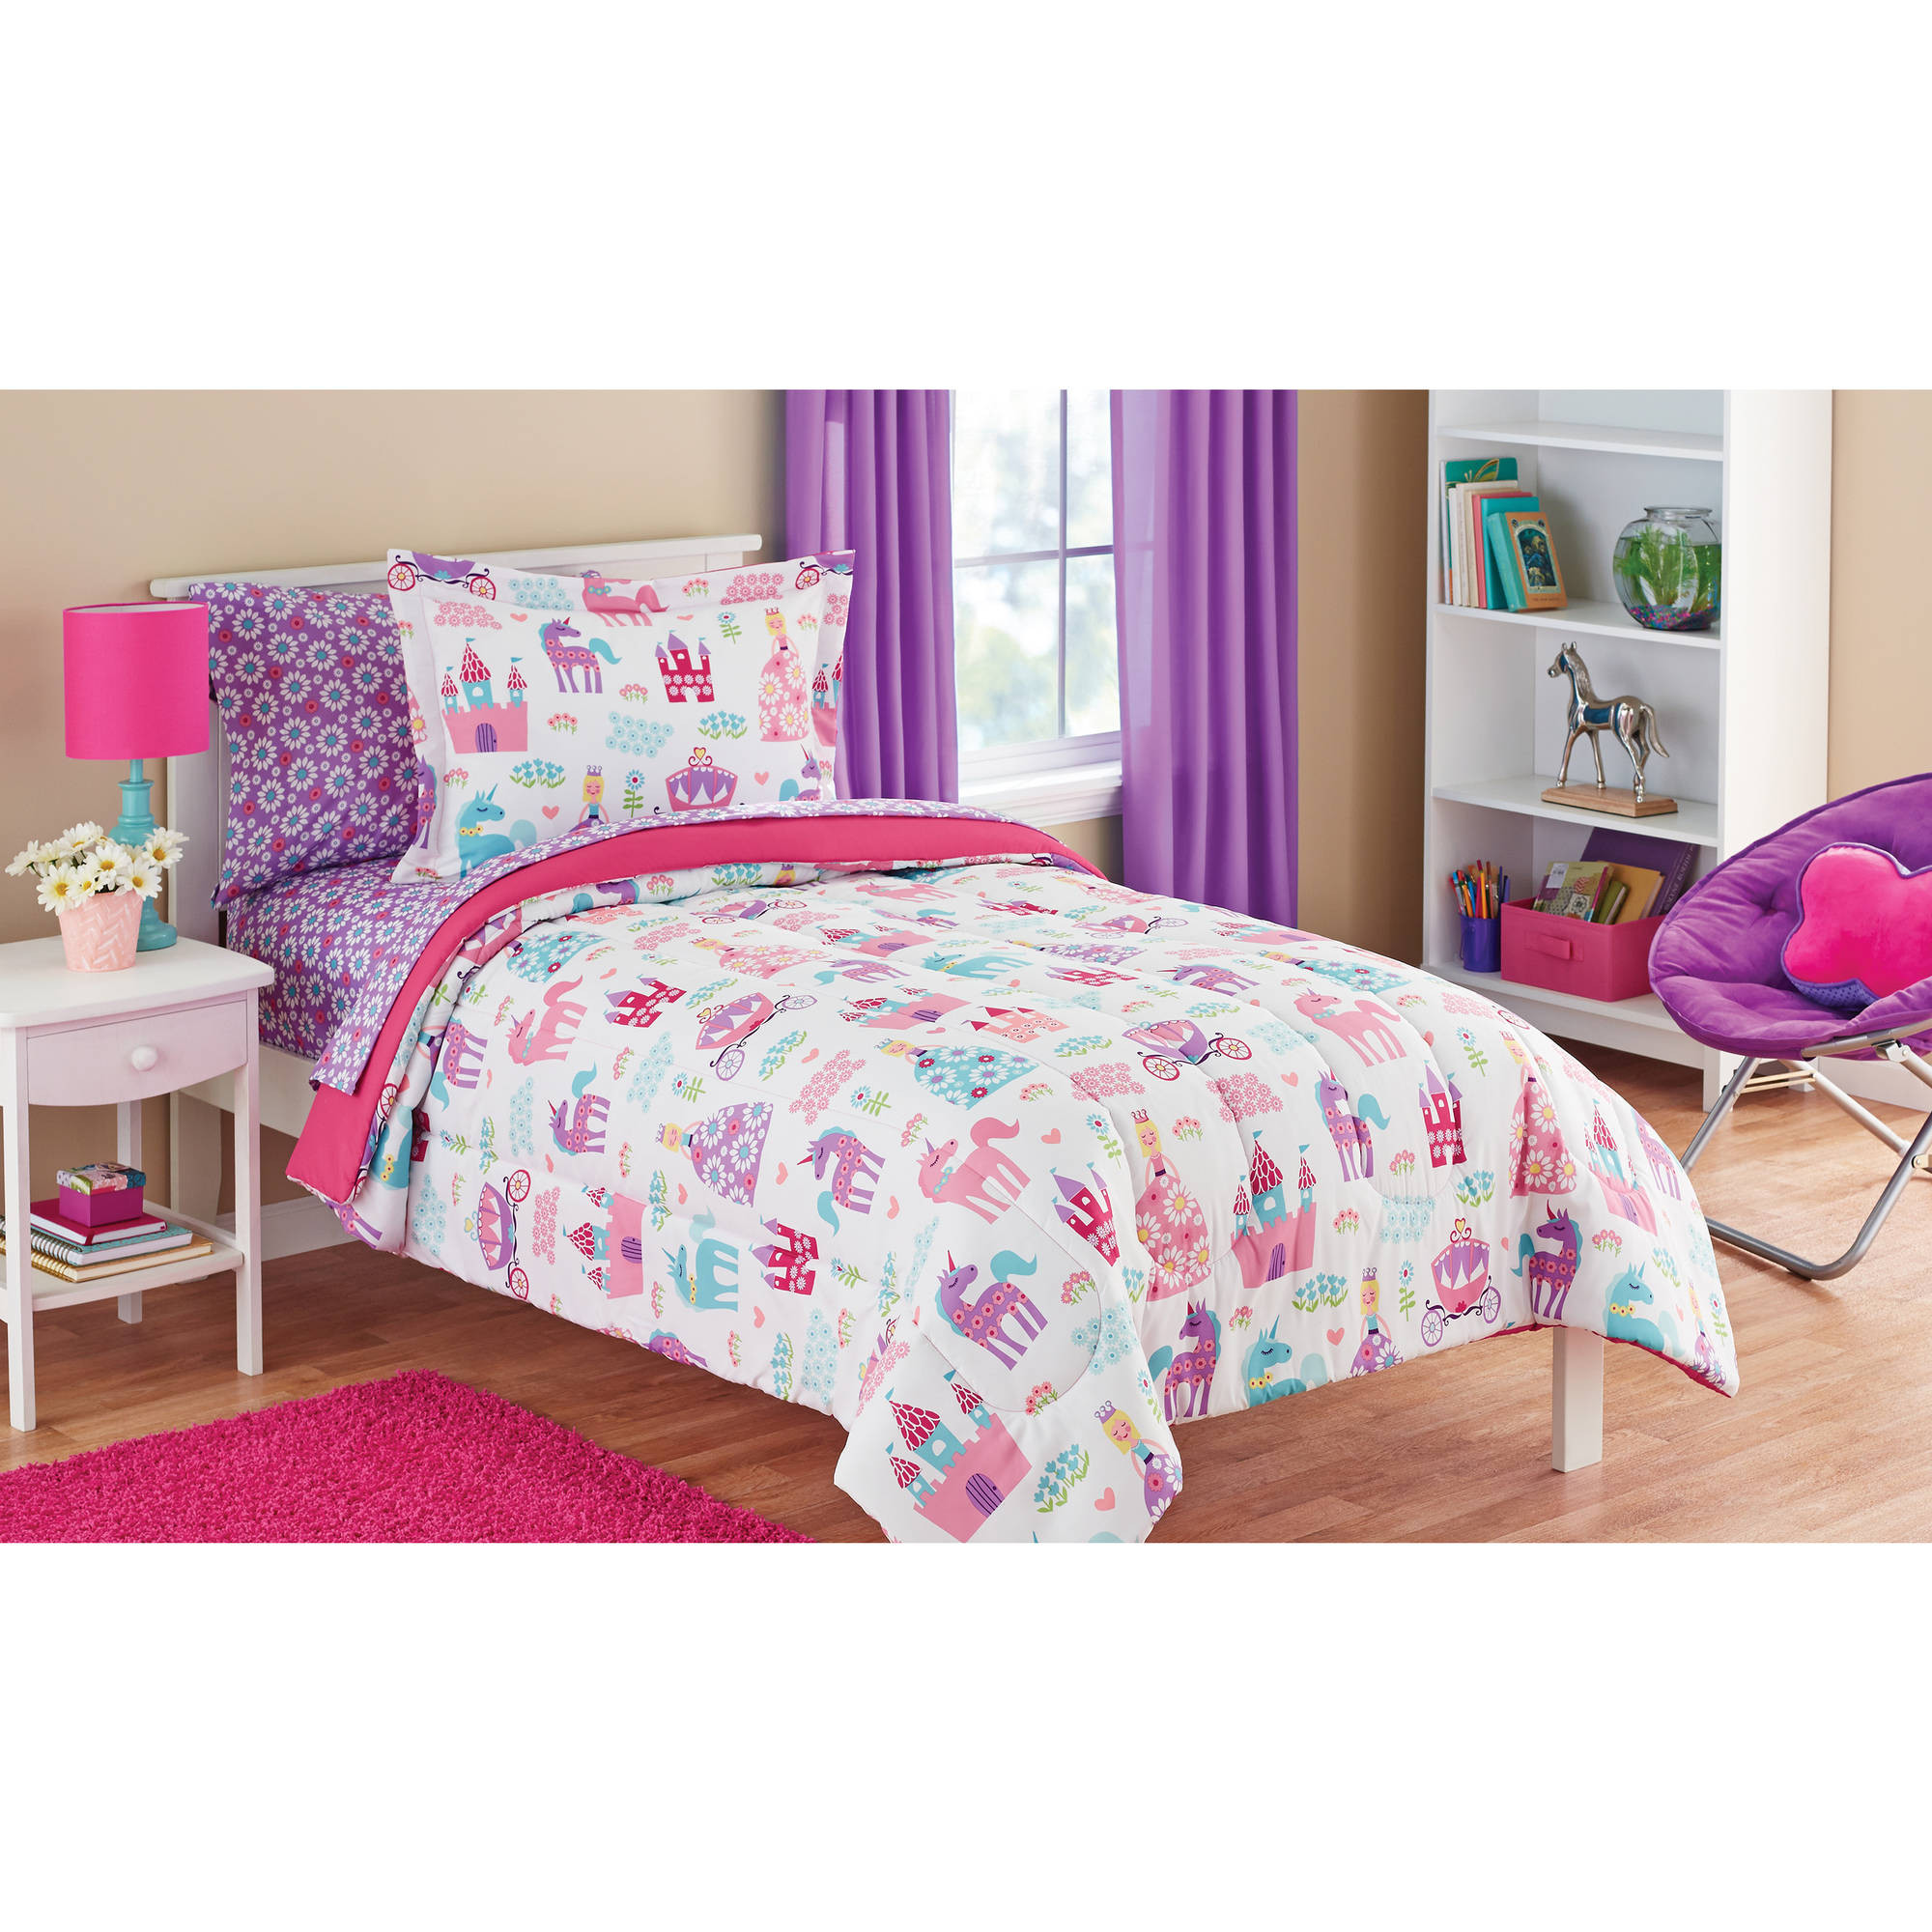 Kids Bedroom Sets Walmart
 Mainstays Kids Pretty Princess Bed in a Bag Bedding Set